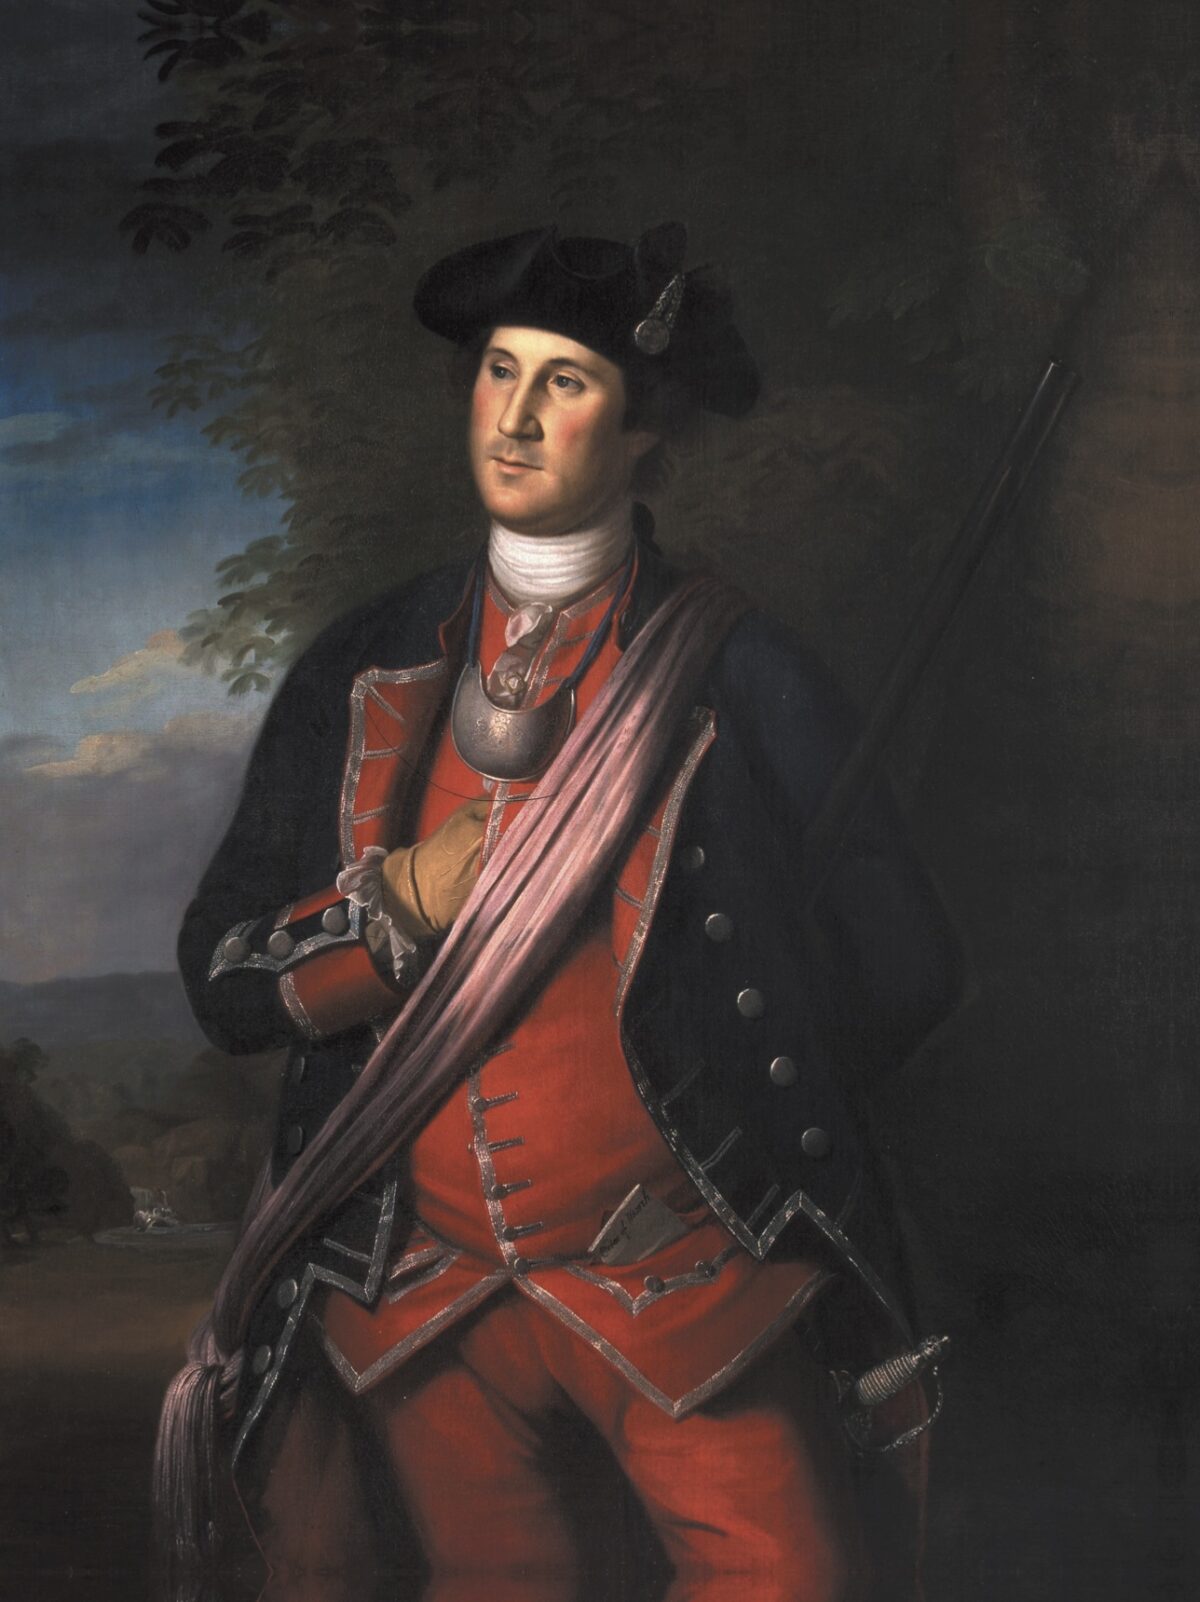 Đại tá George Washington đã sử dụng tài năng quân sự trong Chiến tranh Cách mạng như thế nào